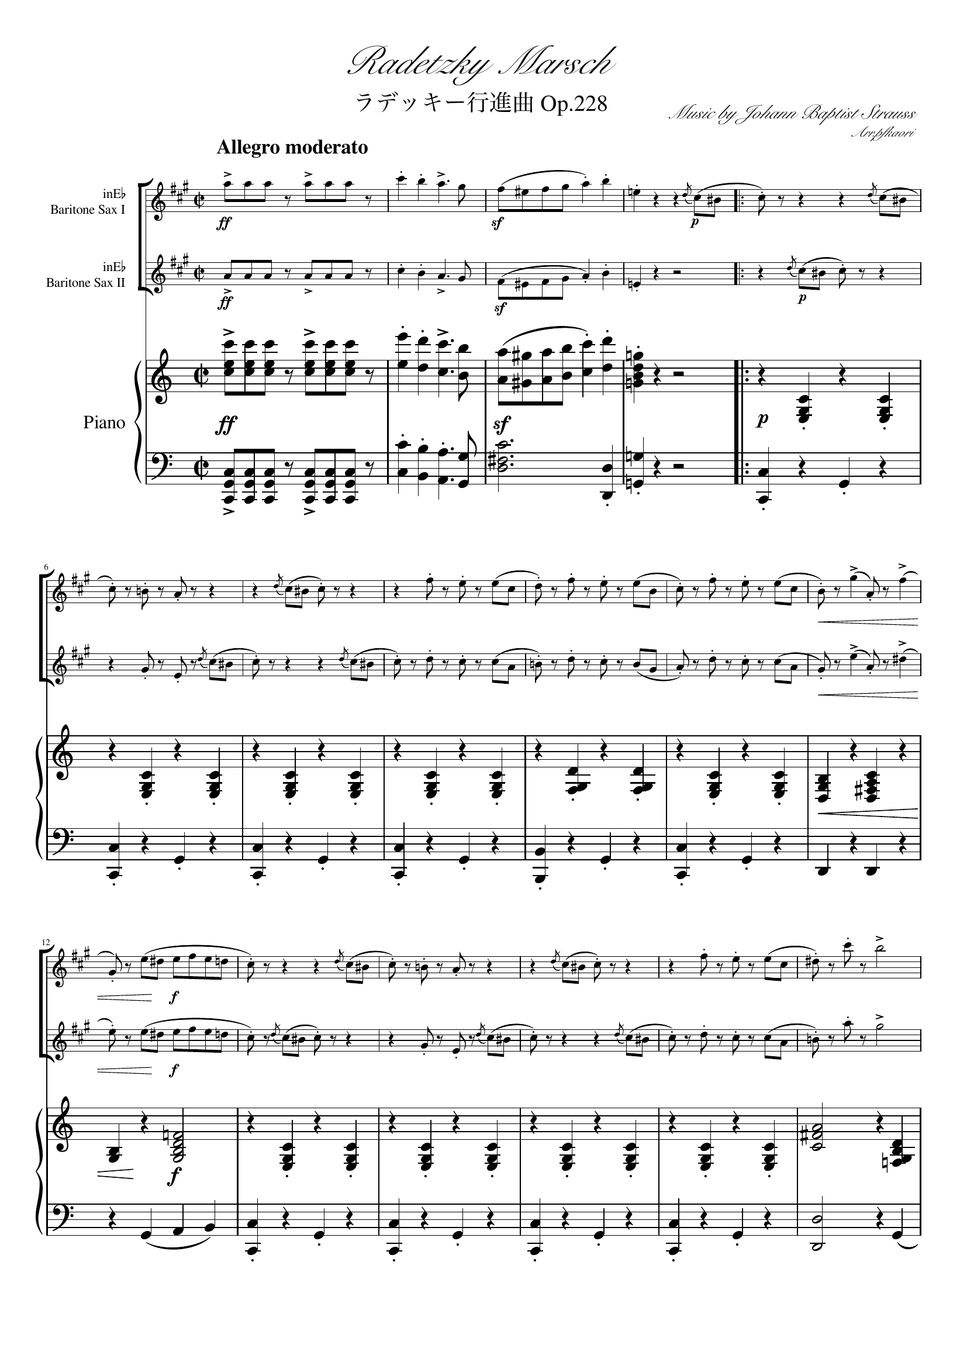 ヨハンシュトラウス1世 - ラデッキー行進曲 (C・ピアノトリオ/バリトンサックスデュオ) by pfkaori